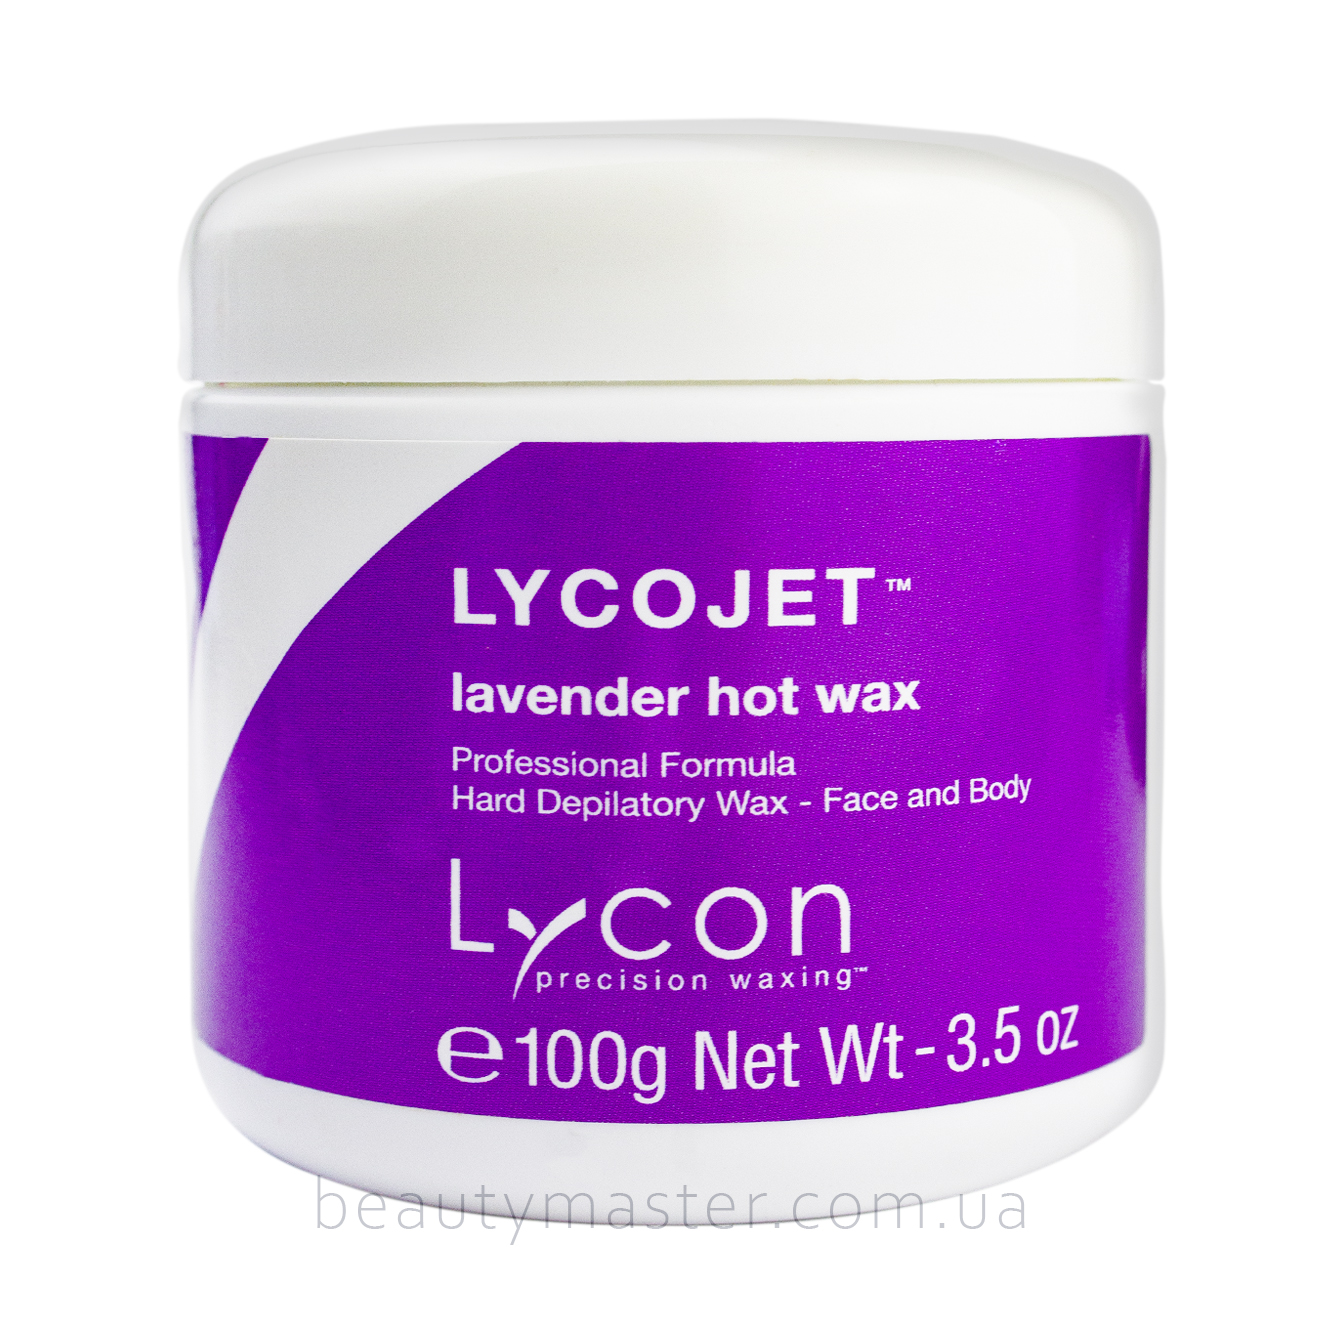 Lycojet lavender hot wax воск для лица и тела 100г Lycon